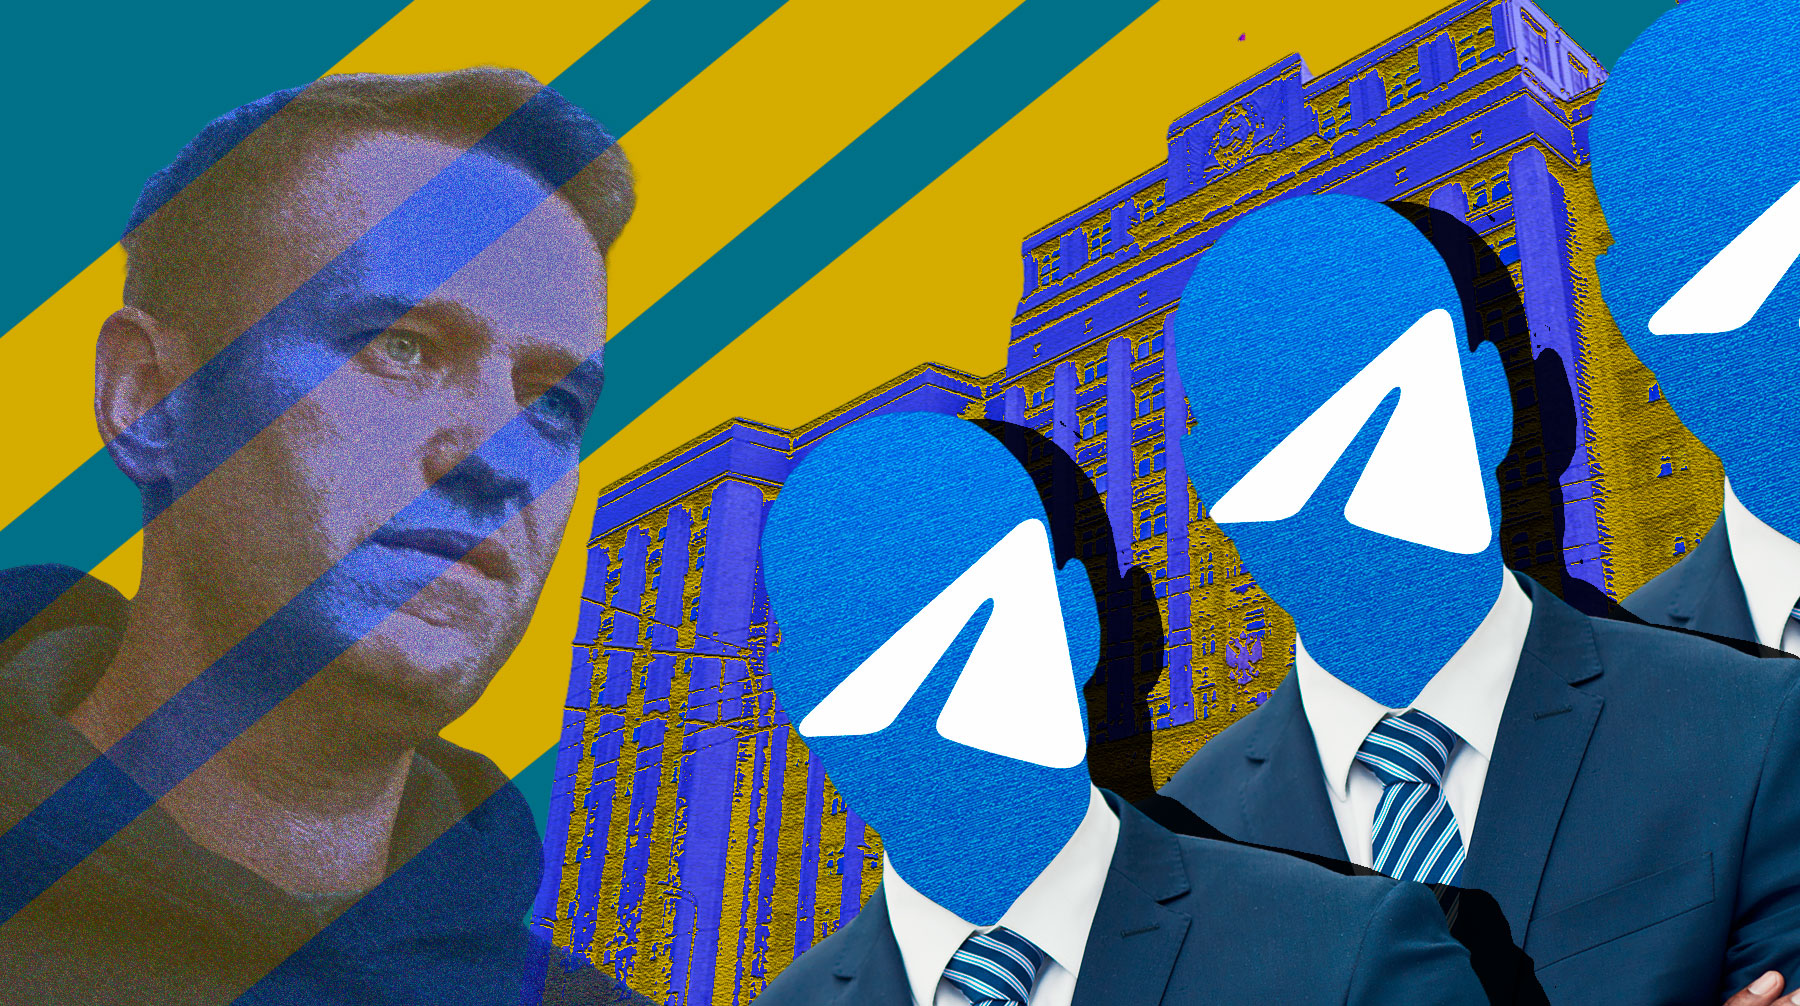 КПРФ и «Яблоко» рассказывают о протестах, «Справедливая Россия» и единороссы осуждают Навального, а ЛДПР пишет о себе Коллаж:  Daily Storm